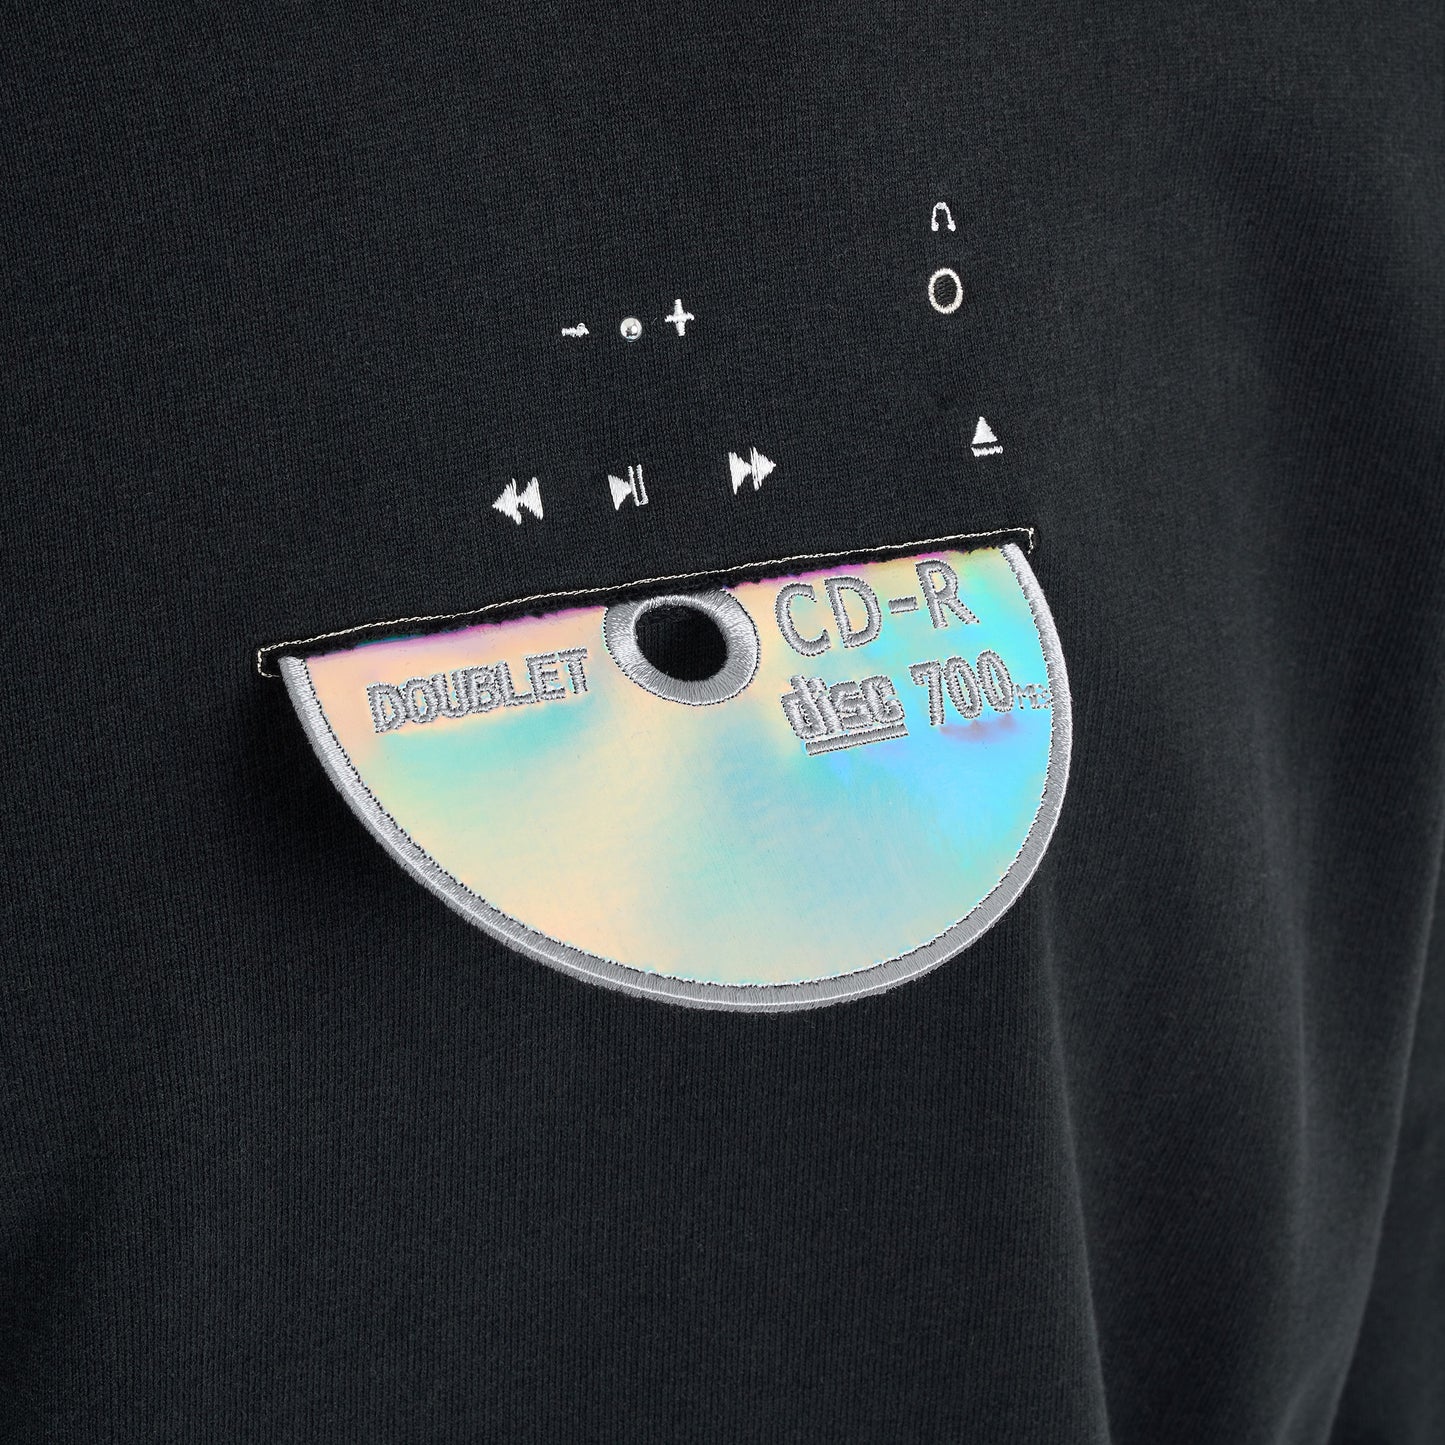 CD-R Embroidery Hoodie in Black